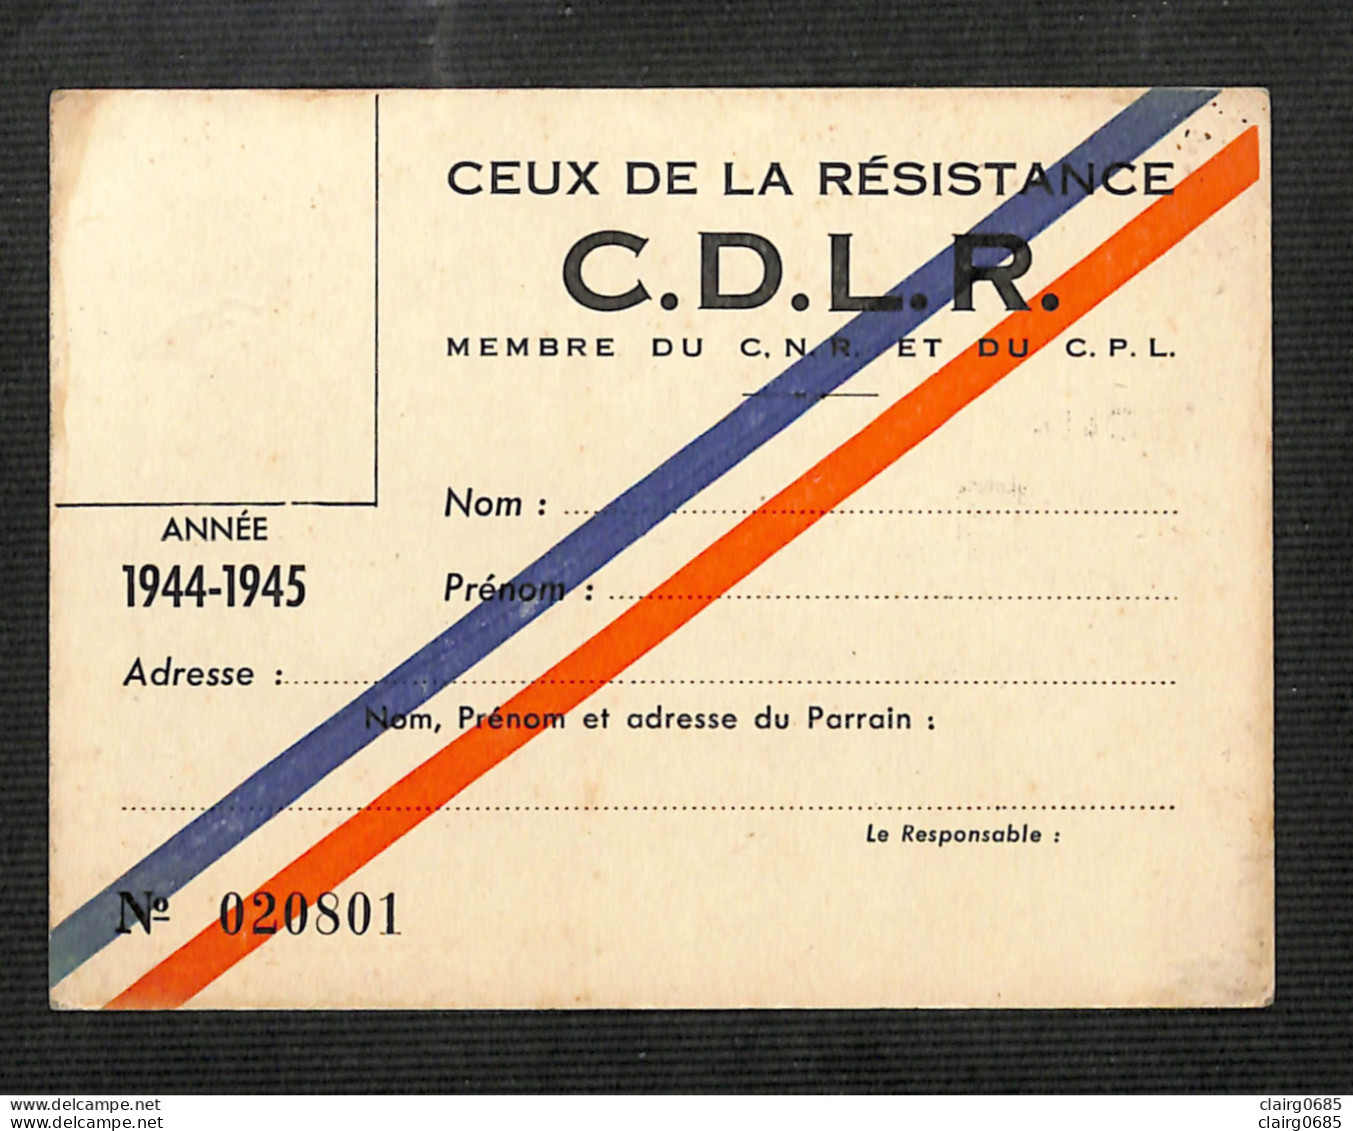 MILITARIA - CEUX DE LA RESISTANCE - C.D.L.R. - Carte De Membre Vierge  Du C. N. R. Et Du C. P. L. - 1944-1945 - Dokumente